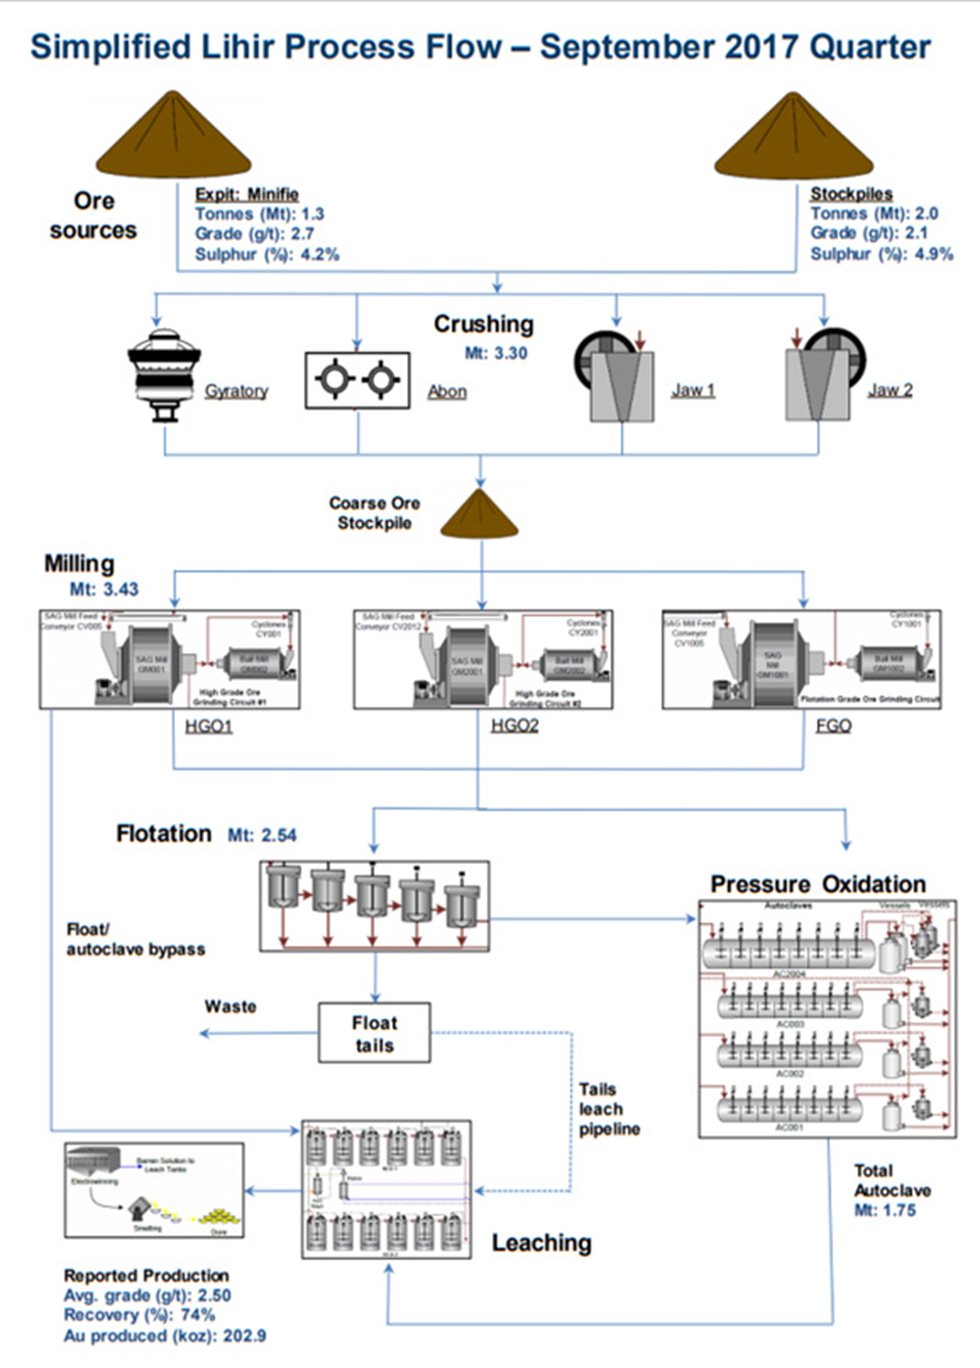 Simplified Lihir Process Flow Diagram